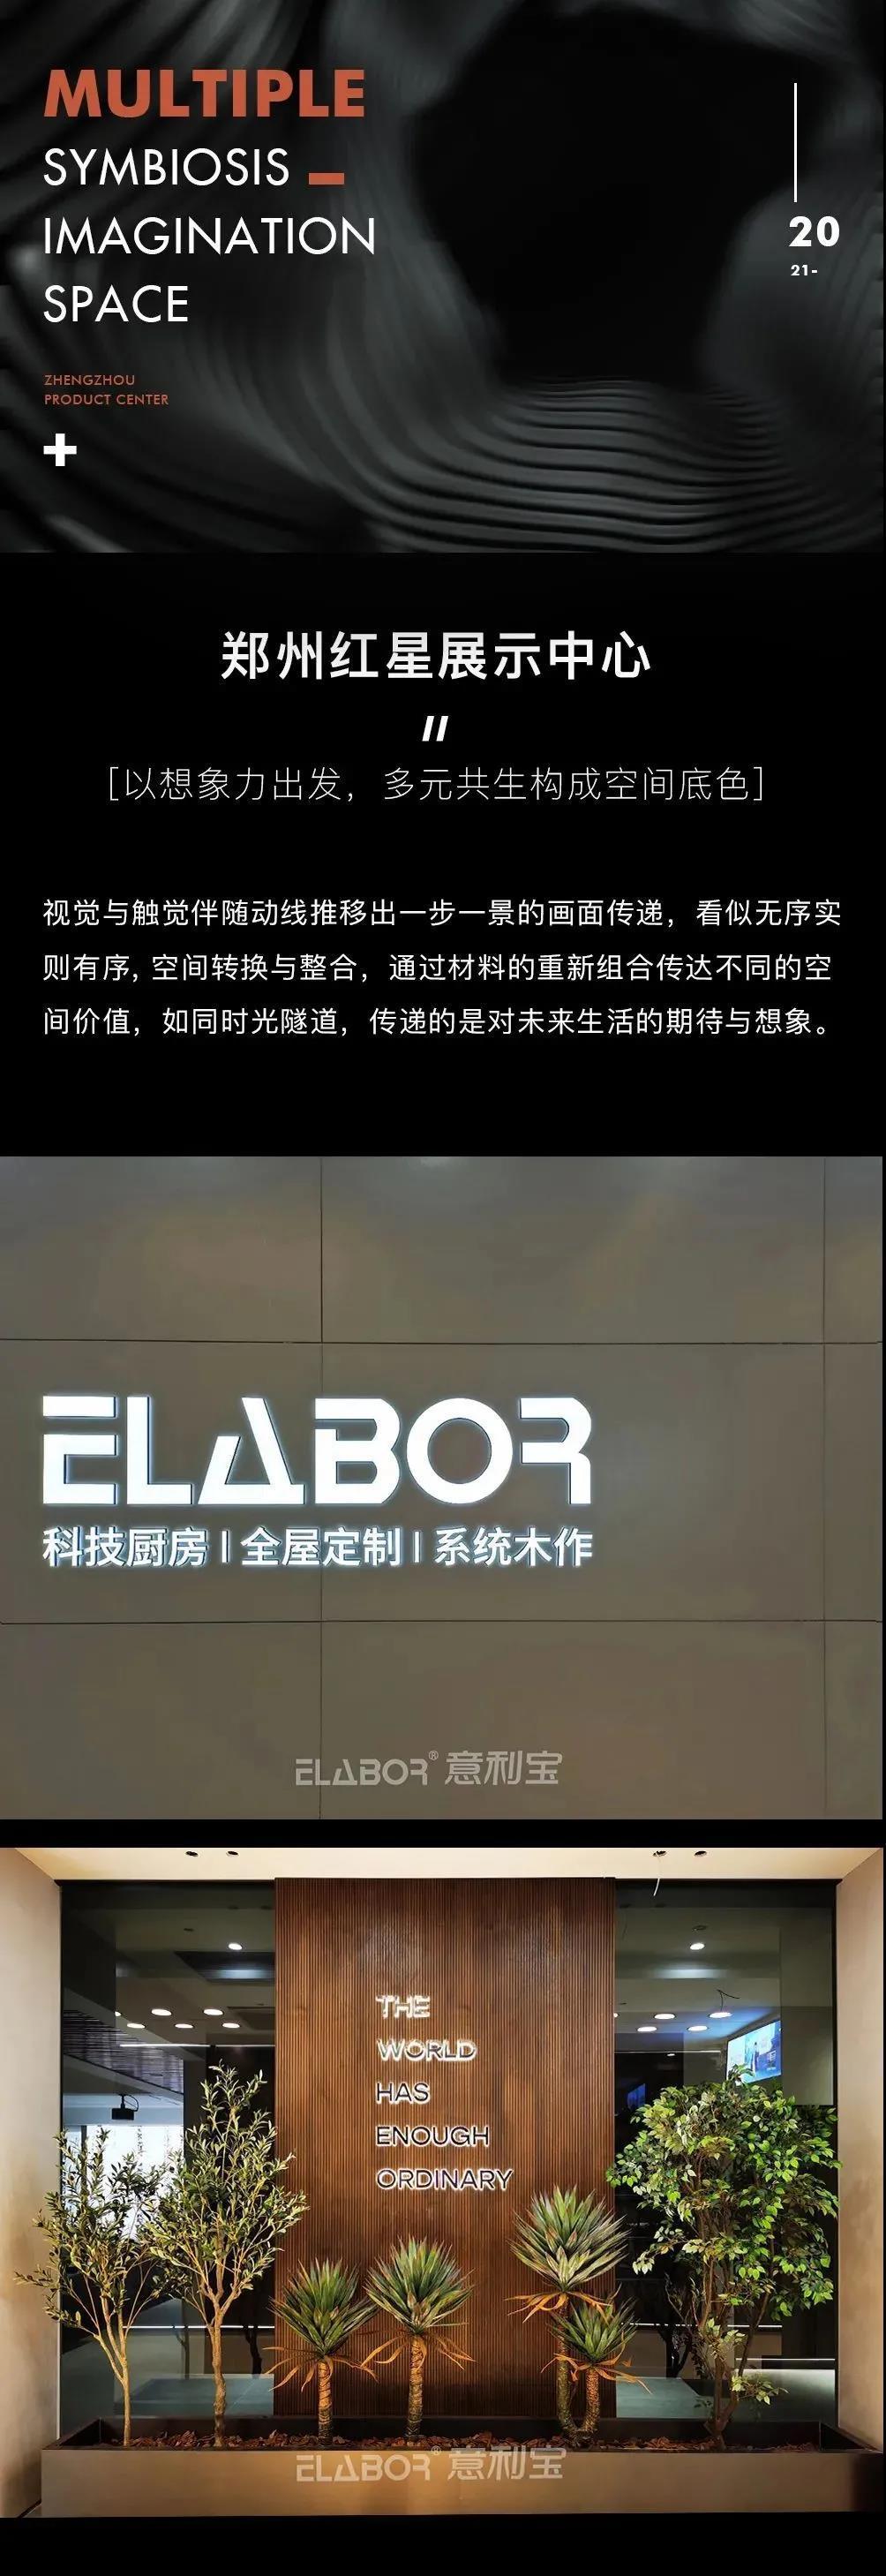 ELABOR郑州红星展示中心l以多元空间重构空间本色